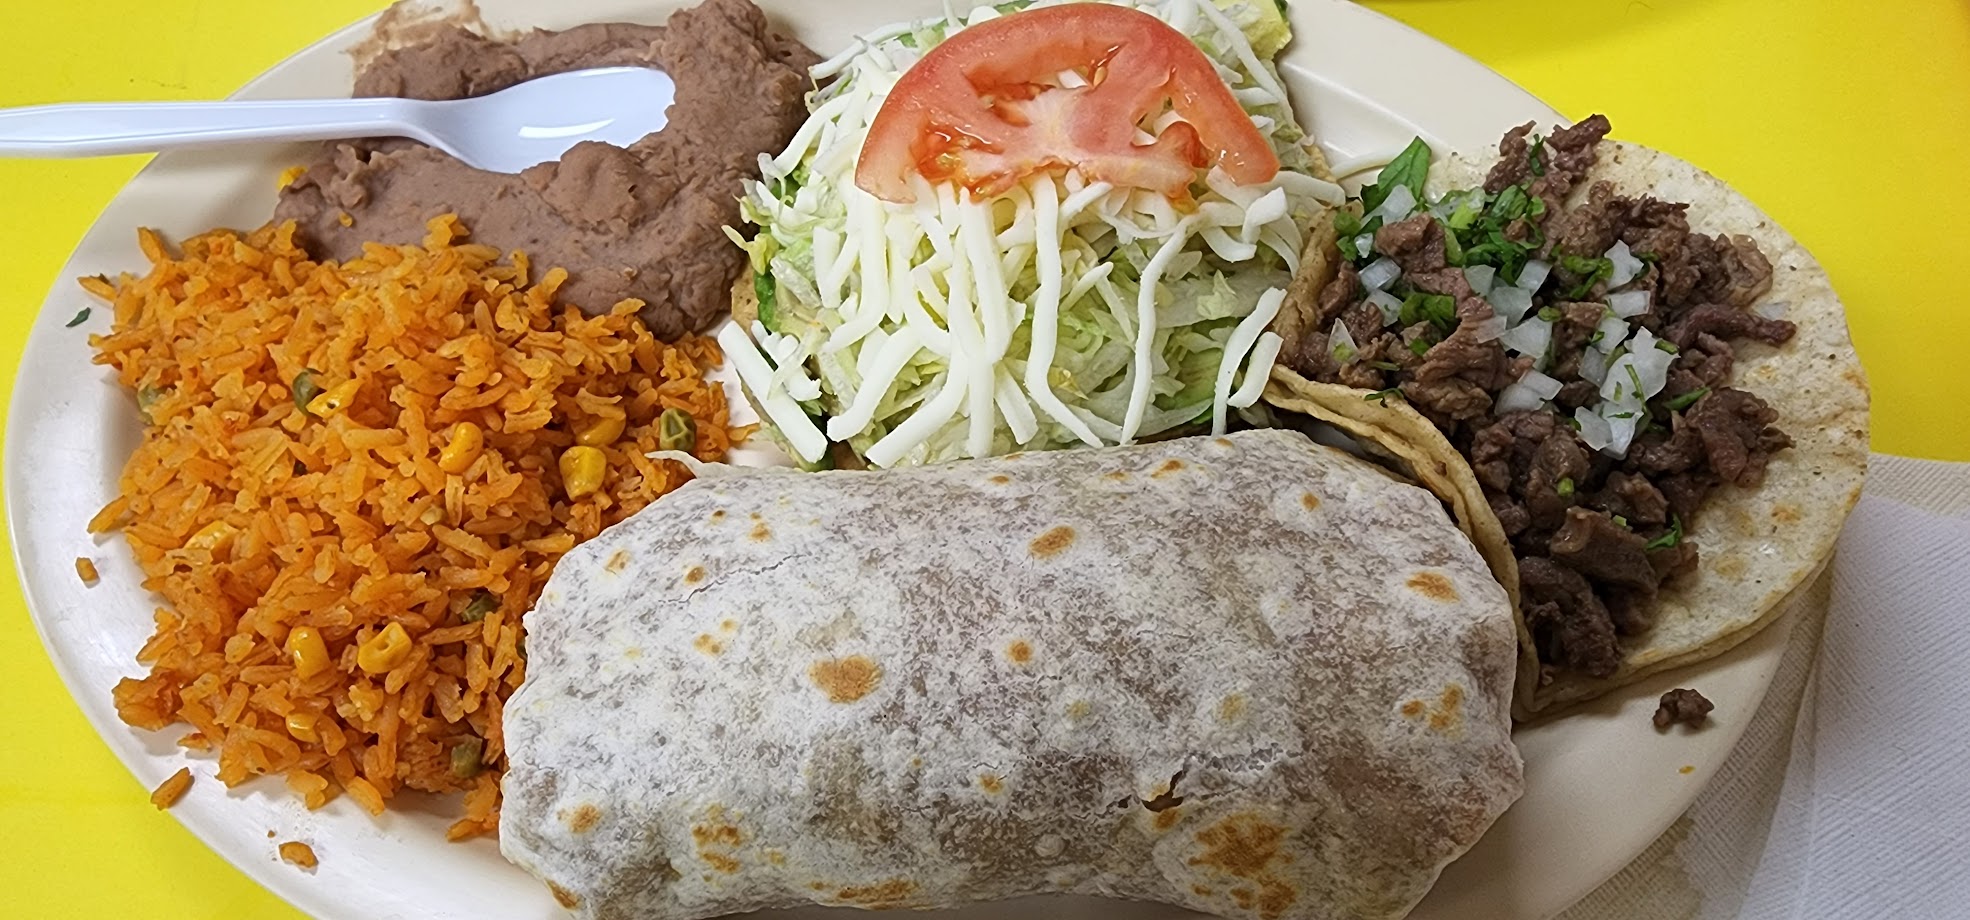 Tacos y Burritos Jalisco